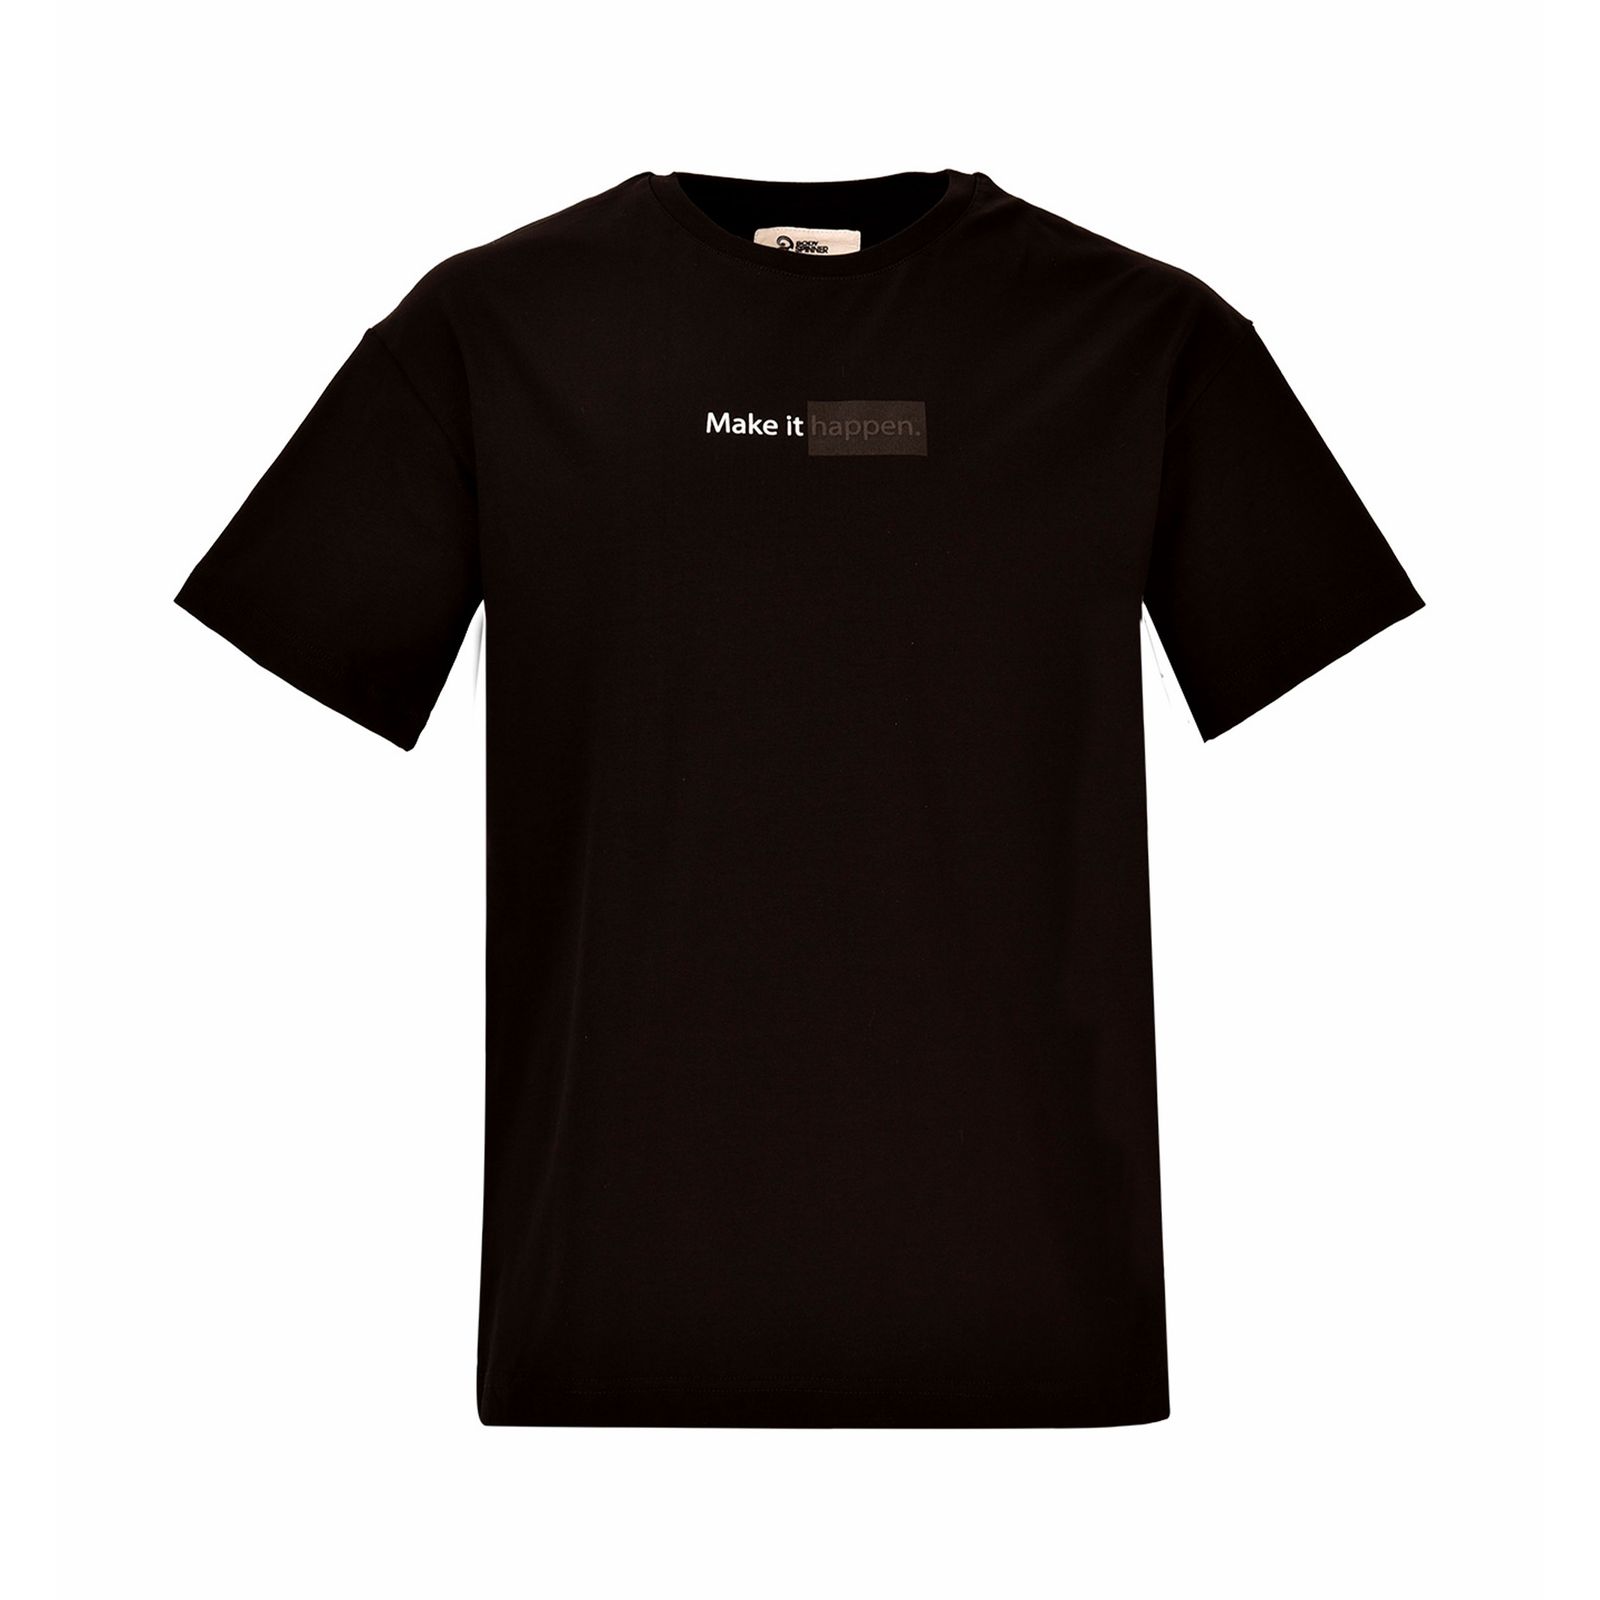 تی شرت آستین کوتاه مردانه بادی اسپینر مدل 3222 کد 1 رنگ مشکی -  - 1